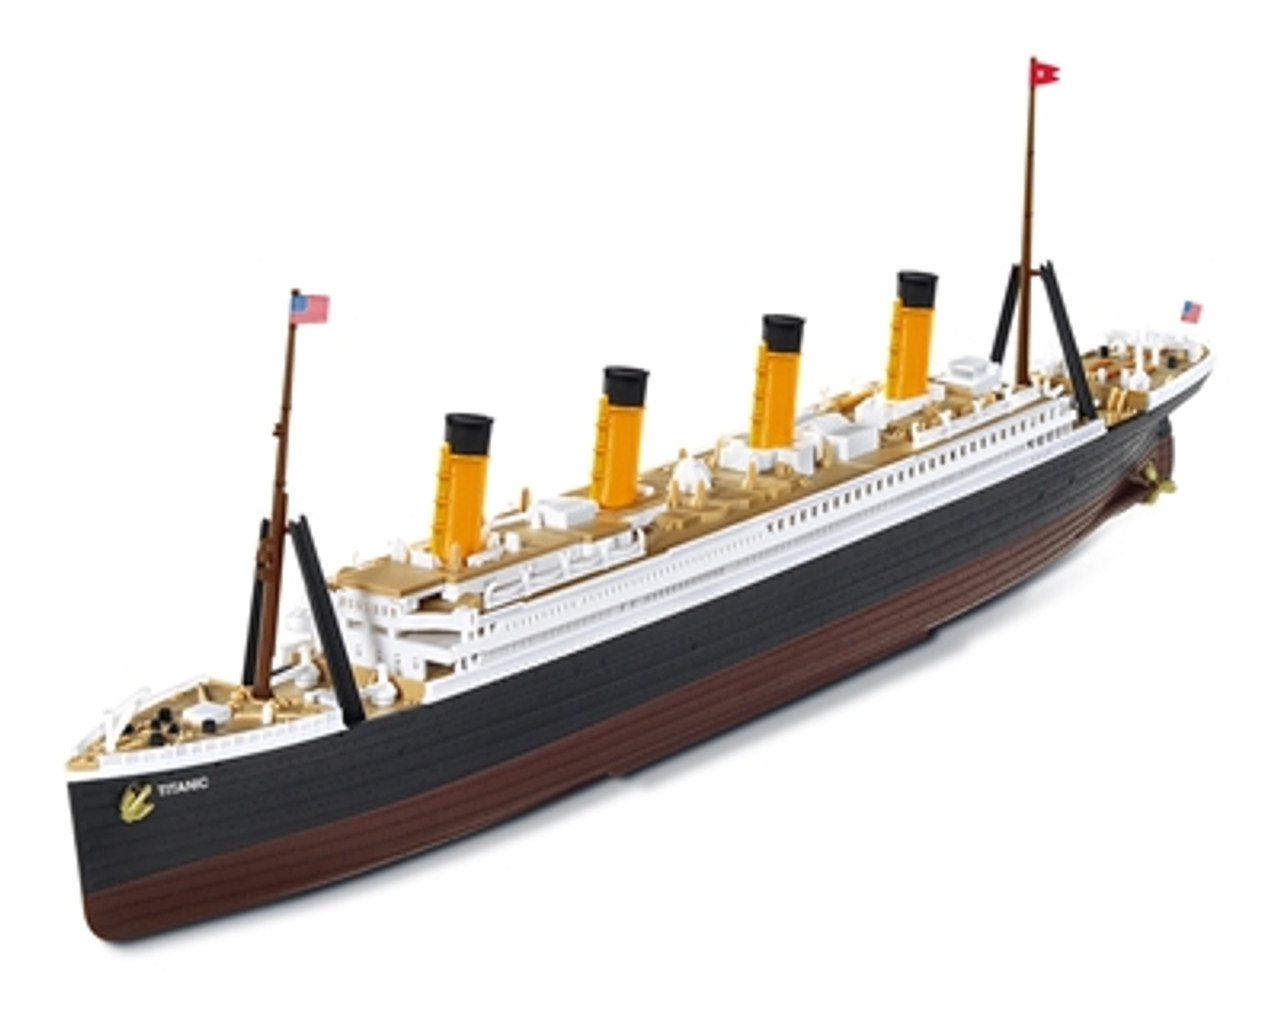 RMS TITANIC ship model kit